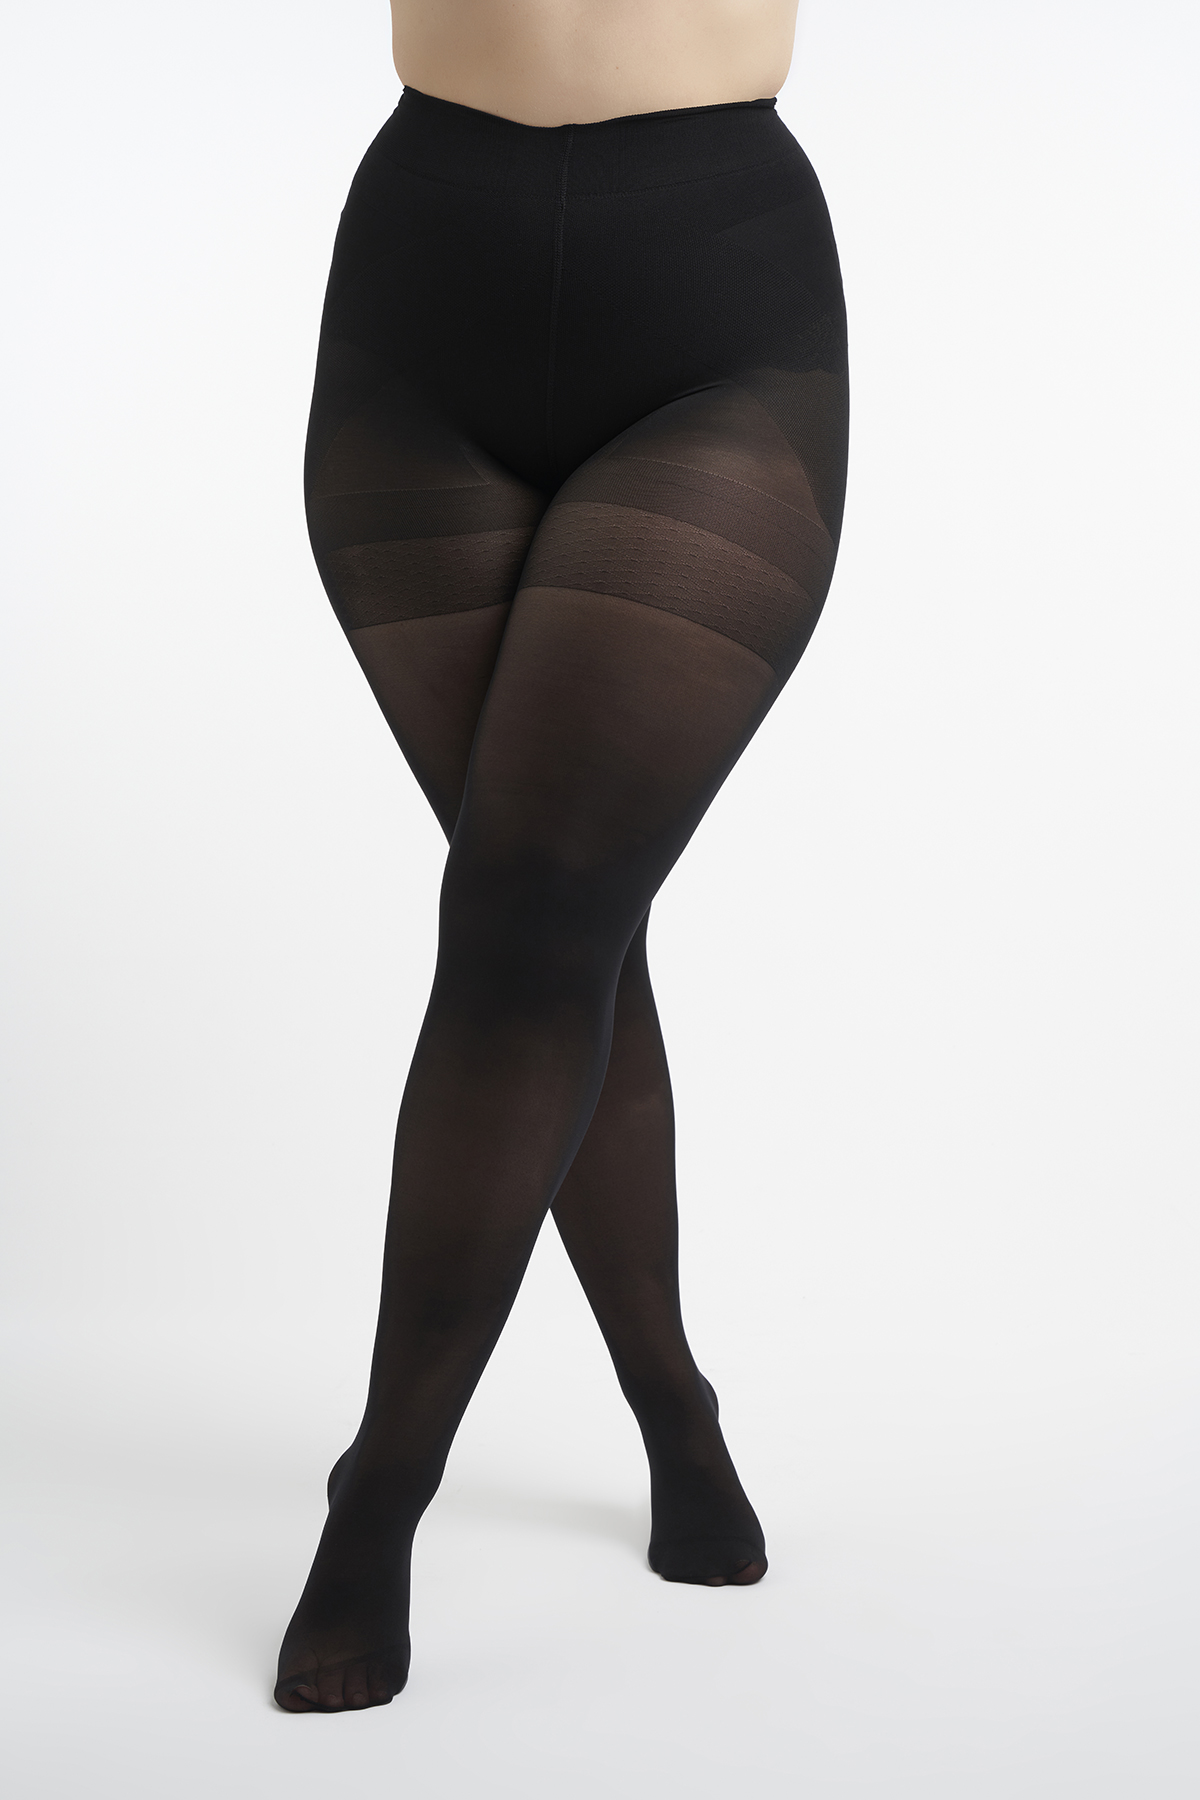 Anoi Verrijken partitie Dames 2-pack Shaping panty 60 denier Zwart bij MS Mode®